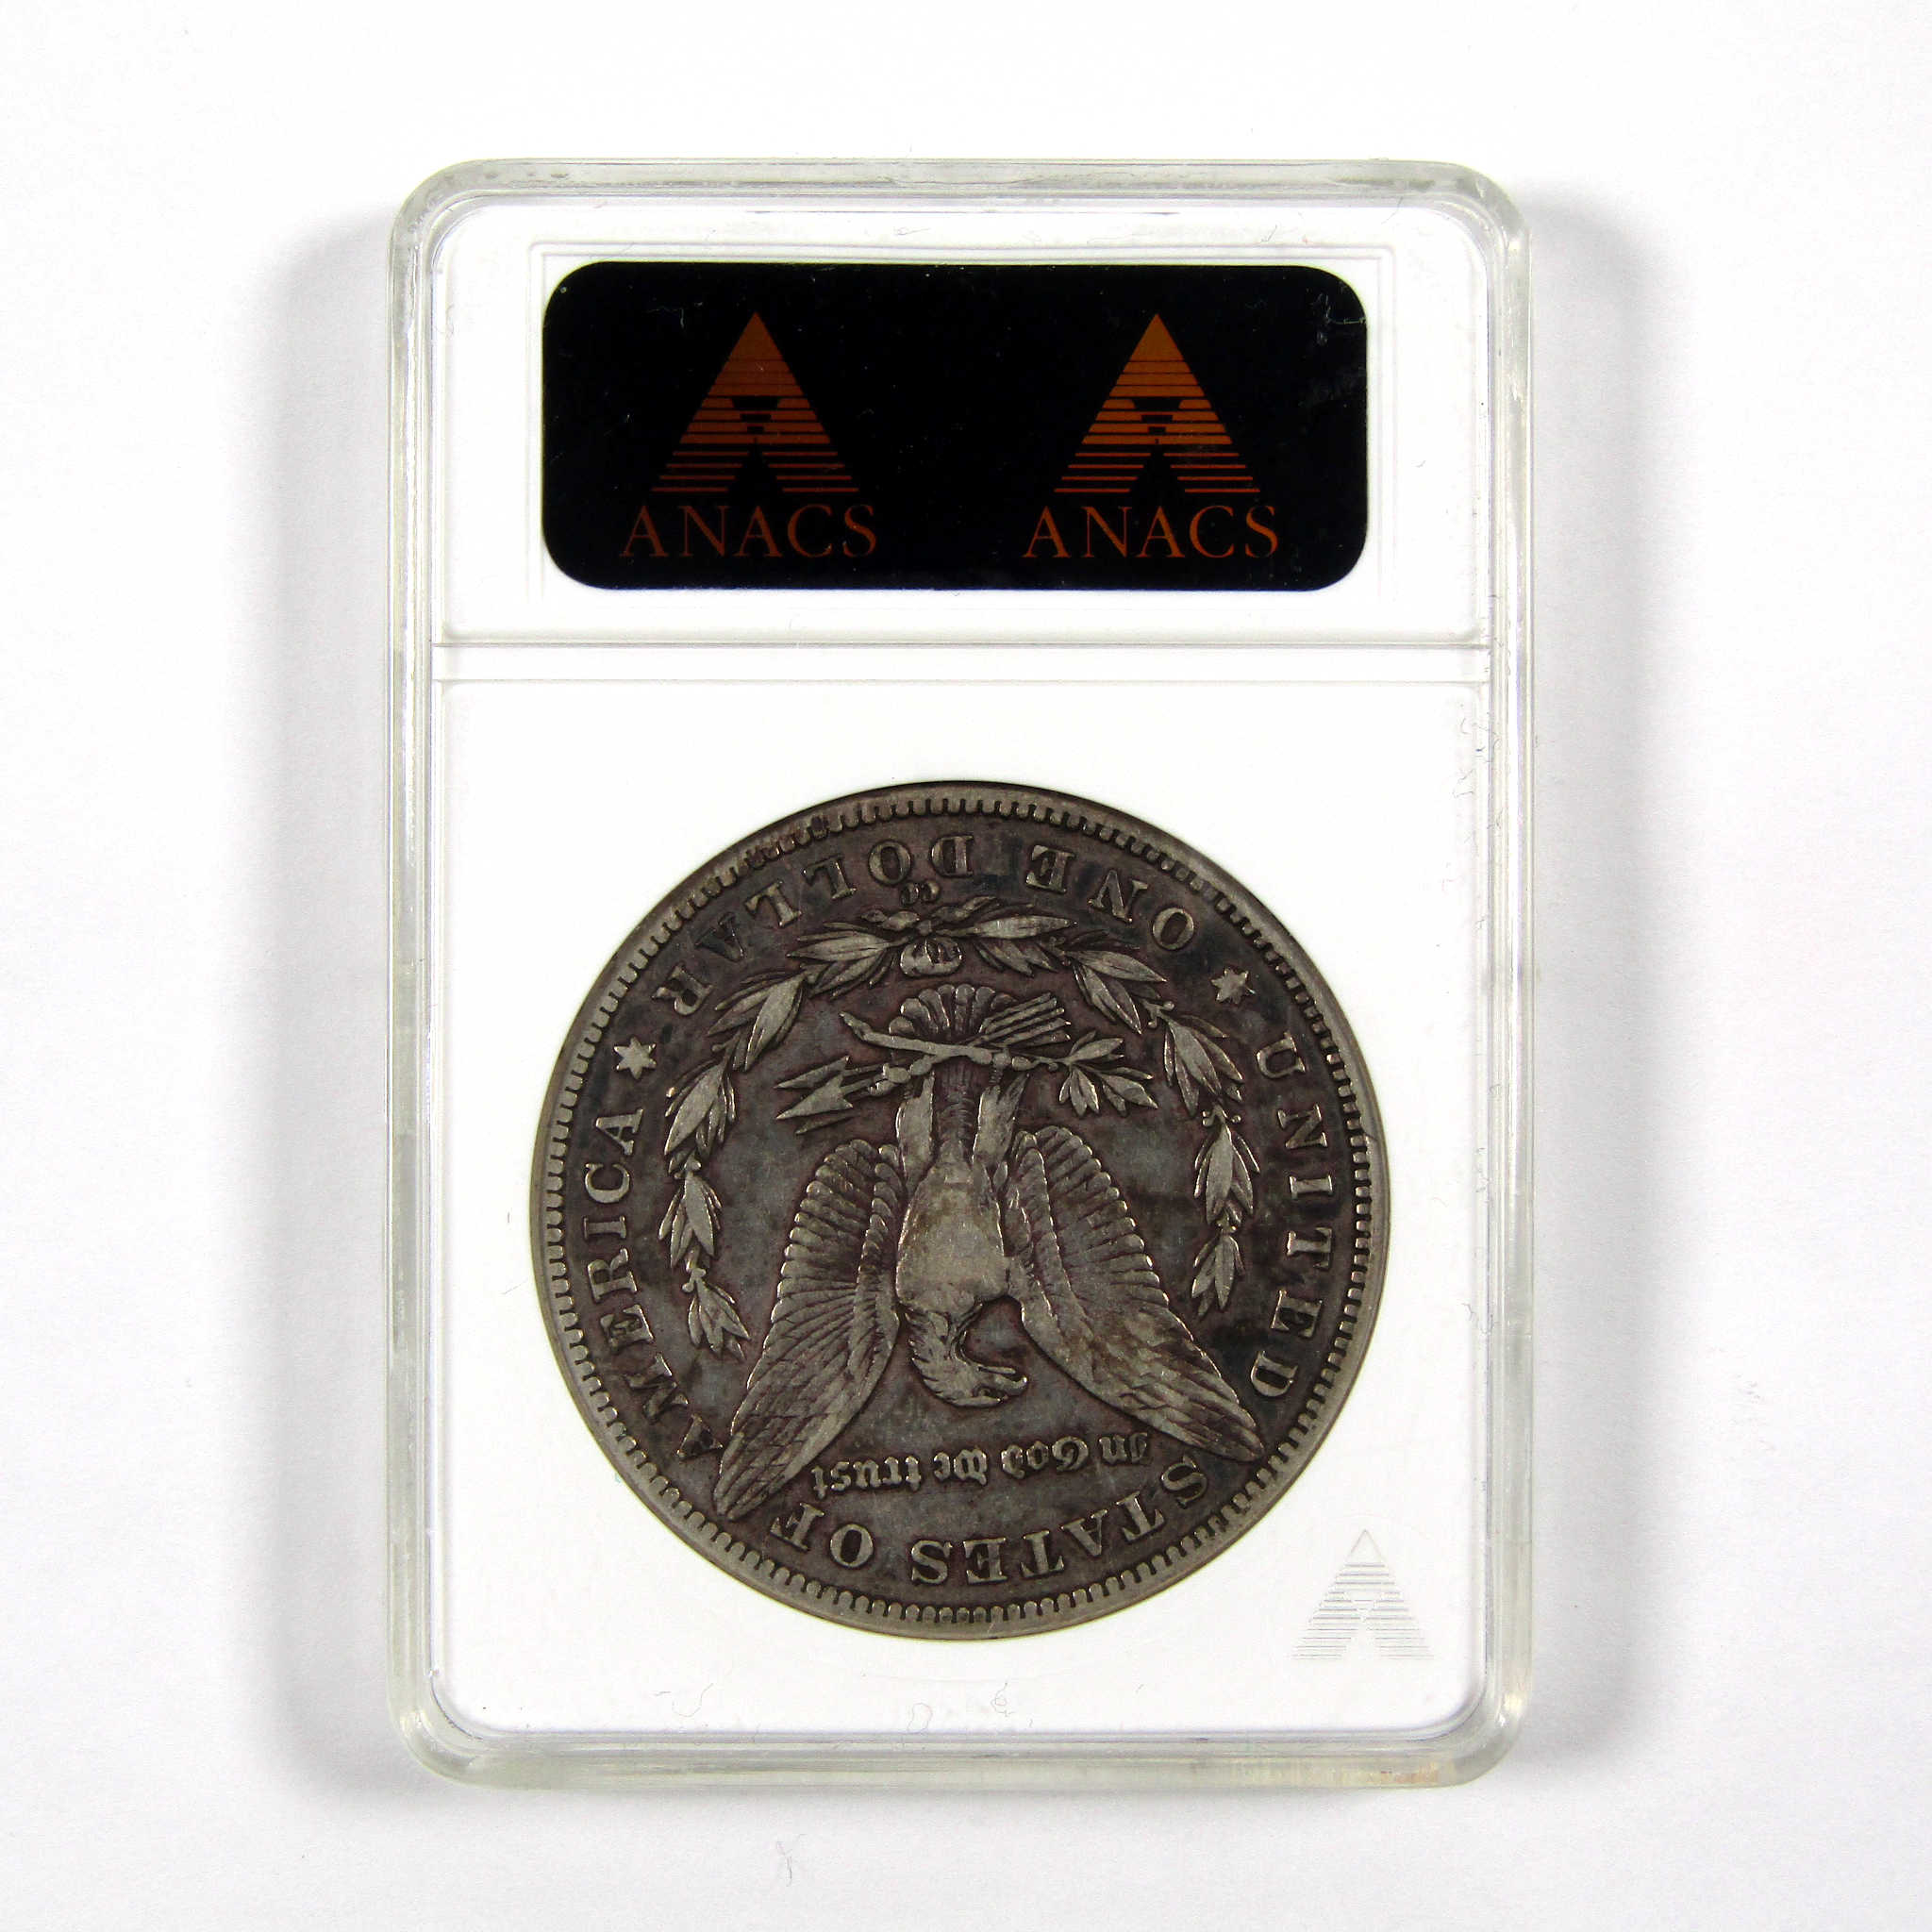 1889 CC Morgan Dollar VF 35 ANACS 90% Silver $1 Coin SKU:I9132 - Morgan coin - Morgan silver dollar - Morgan silver dollar for sale - Profile Coins &amp; Collectibles